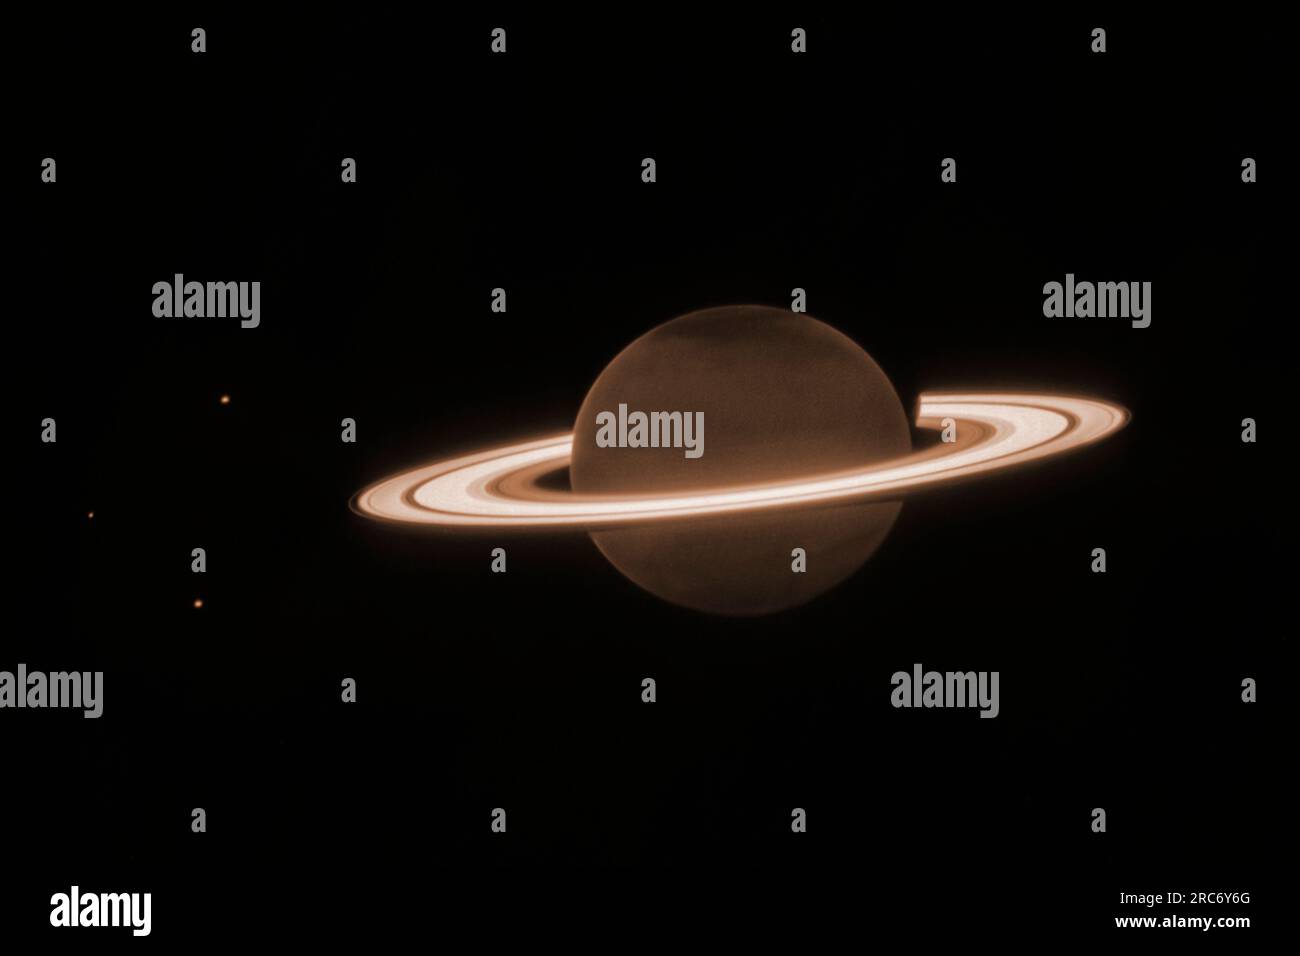 Am 25. Juni 2023 wandte sich das James Webb Space Telescope der NASA an die berühmte ringförmige Welt des Saturn, um erstmals den Planeten im Nahinfrarot zu beobachten. Saturn selbst erscheint bei dieser vom Teleskop beobachteten Infrarot-Wellenlänge extrem dunkel, da Methangas fast das gesamte Sonnenlicht absorbiert, das auf die Atmosphäre fällt. Die vereisten Ringe bleiben jedoch relativ hell, was zu einem ungewöhnlichen Aussehen von Saturn im Webb-Bild führt. Dieses neue Bild des Saturn zeigt deutlich Details innerhalb des Ringsystems des Planeten, zusammen mit mehreren Monden des Planeten - Dione, Enceladus und Tethys. NASA/UPI Stockfoto